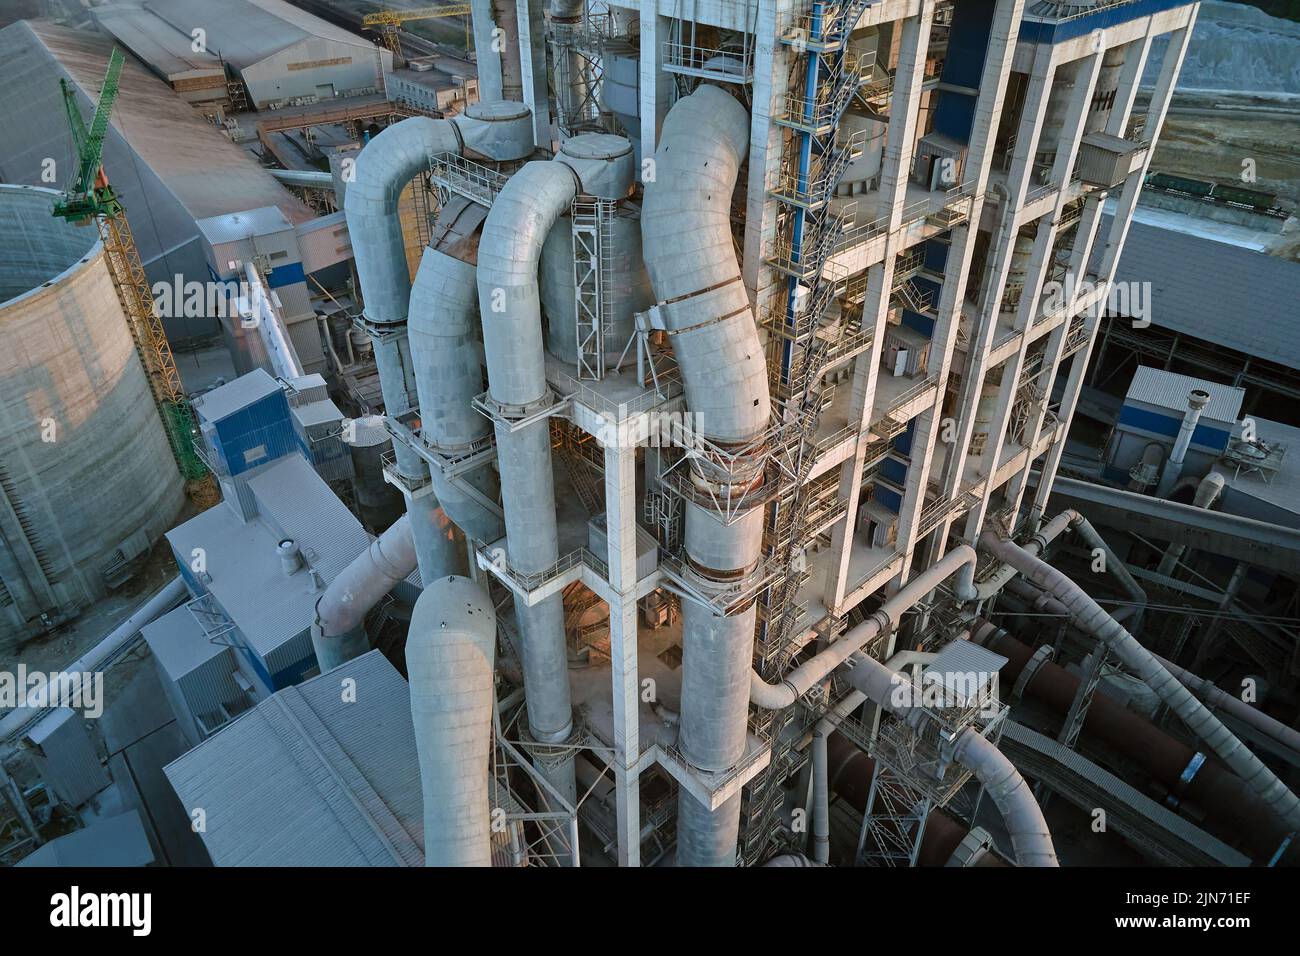 Vue aérienne de l'usine de ciment avec une structure en béton élevée et une grue à tour sur le site de production industriel. Fabrication et industrie mondiale Banque D'Images